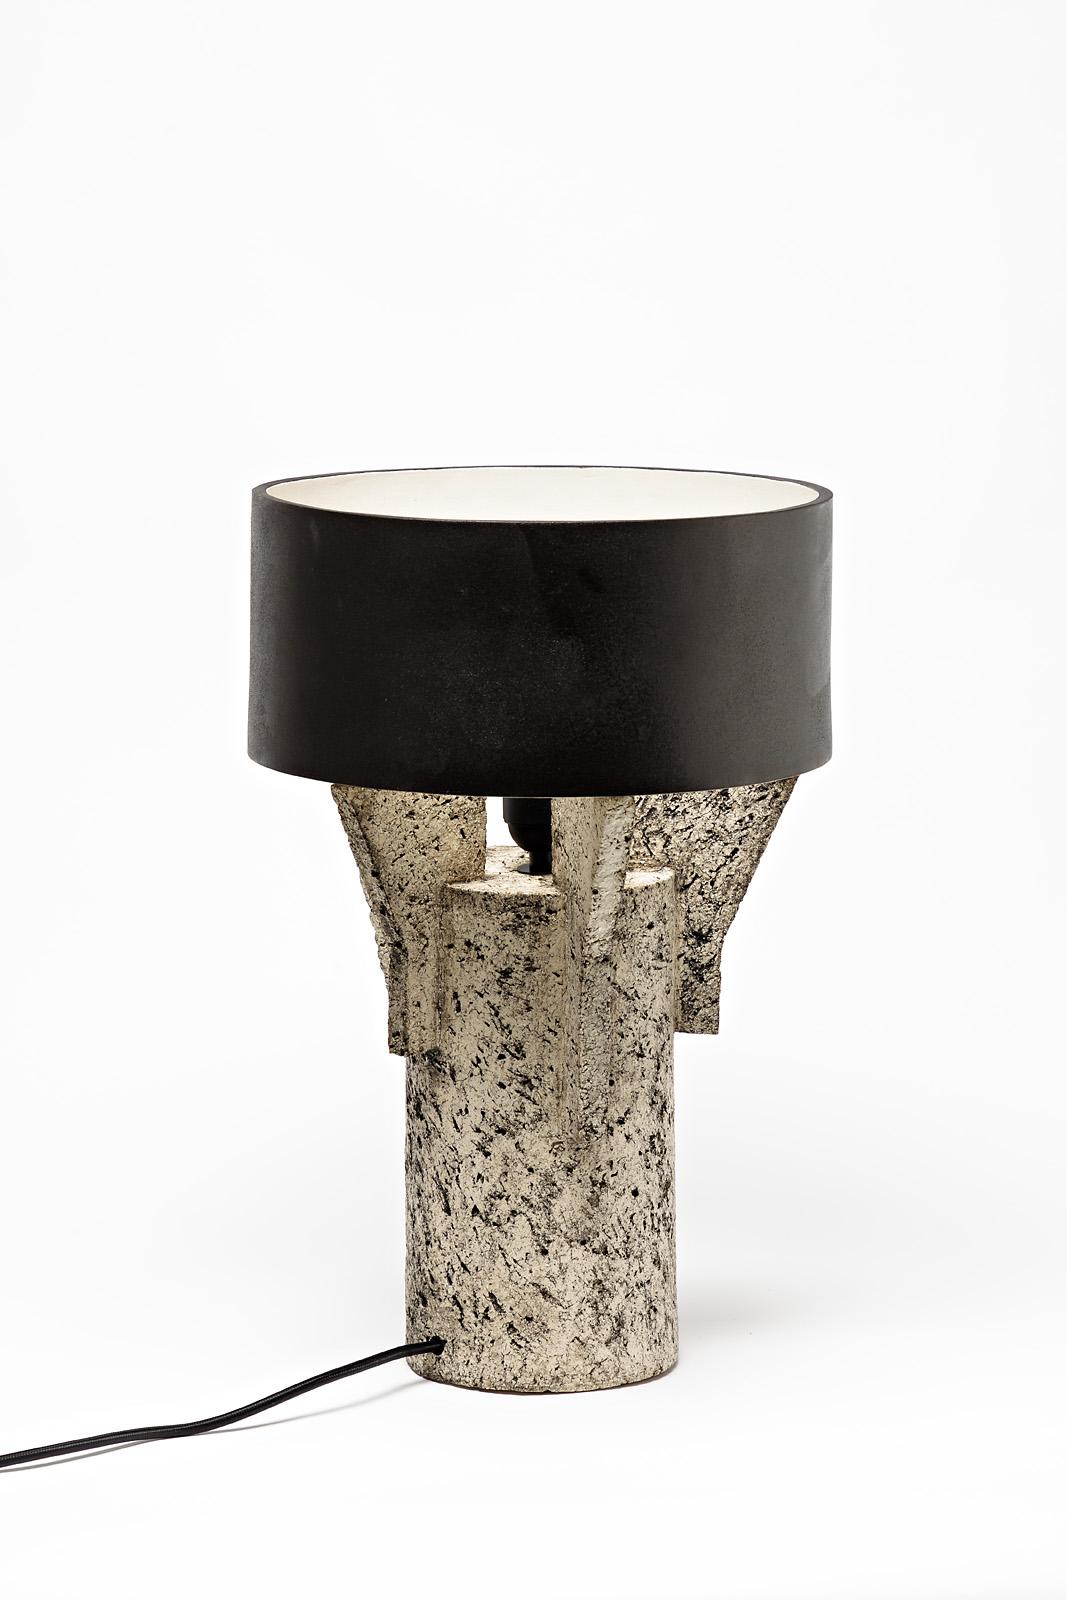 Eine Tischlampe aus Keramik von Denis Castaing mit brauner Glasur.
Der Sockel und der Lampenschirm sind aus Keramik.
Wird mit einer europäischen elektrischen Anlage verkauft.
Perfekter Originalzustand.
2019.
Unter dem Sockel signiert.
   